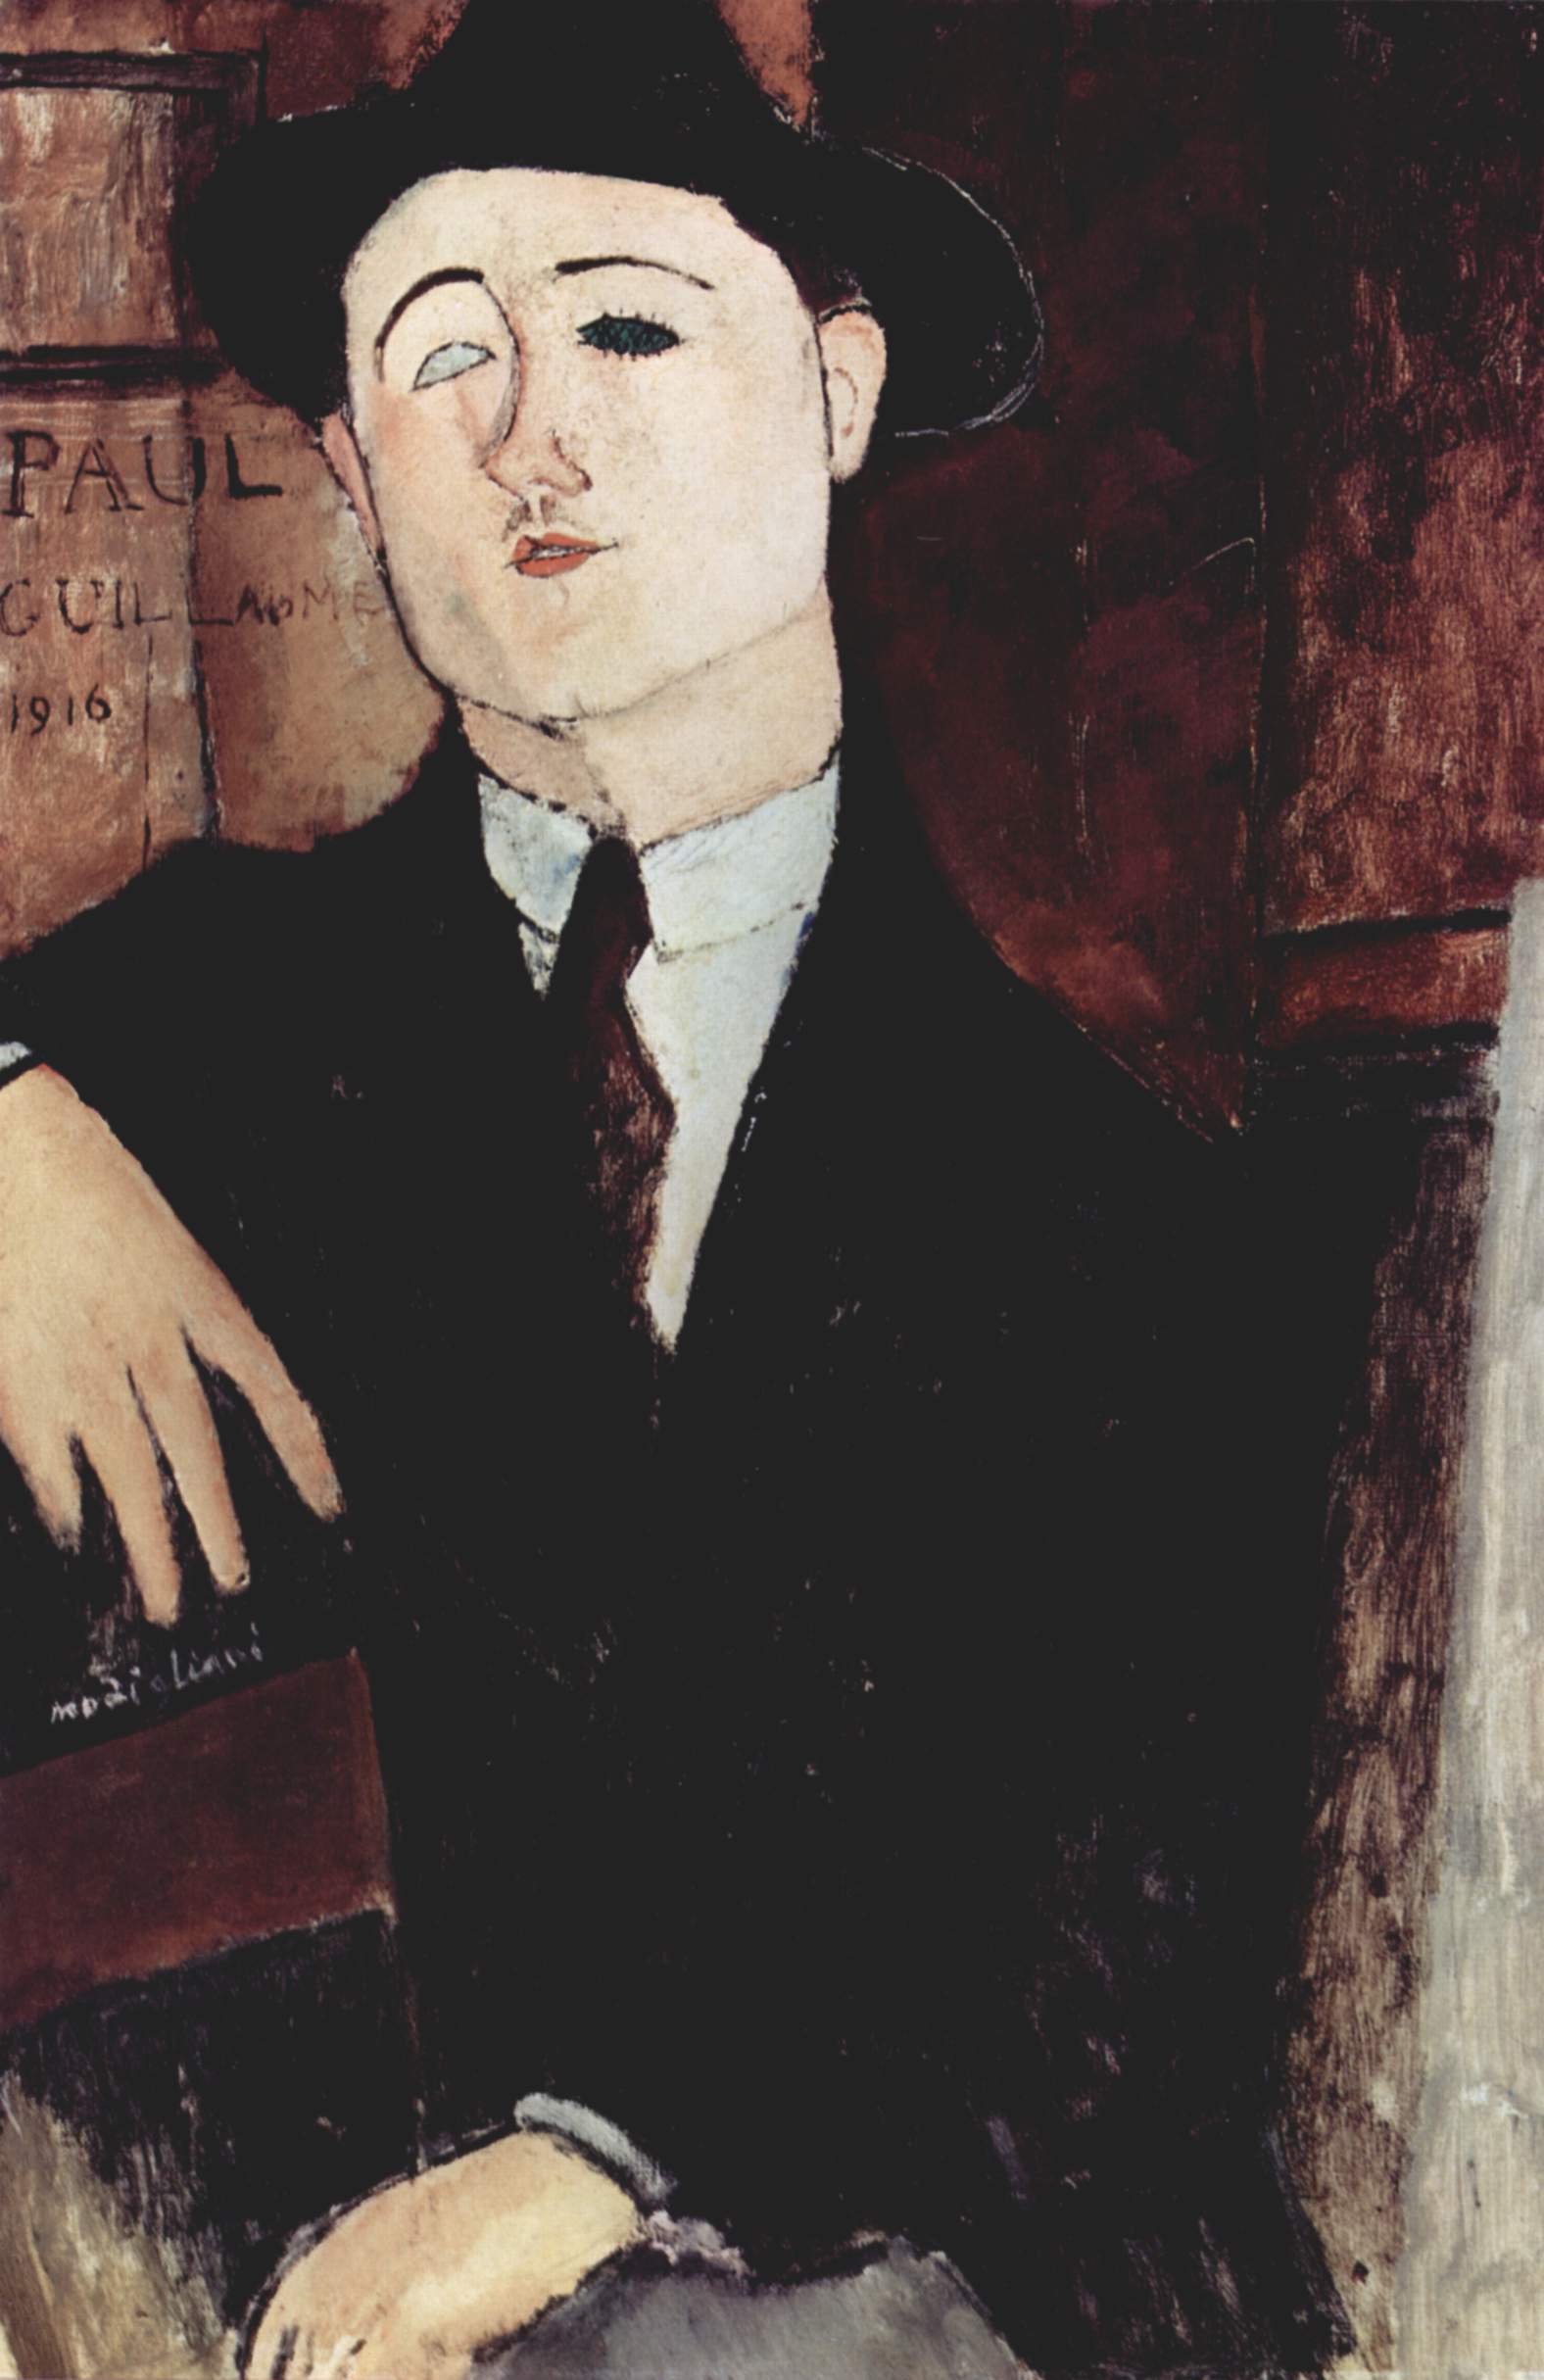 Amedeo Modigliani, Ritratto di Paul Guillaume, 1910, Olio su tela, 54 x 81 cm, Milano, Museo del Novecento